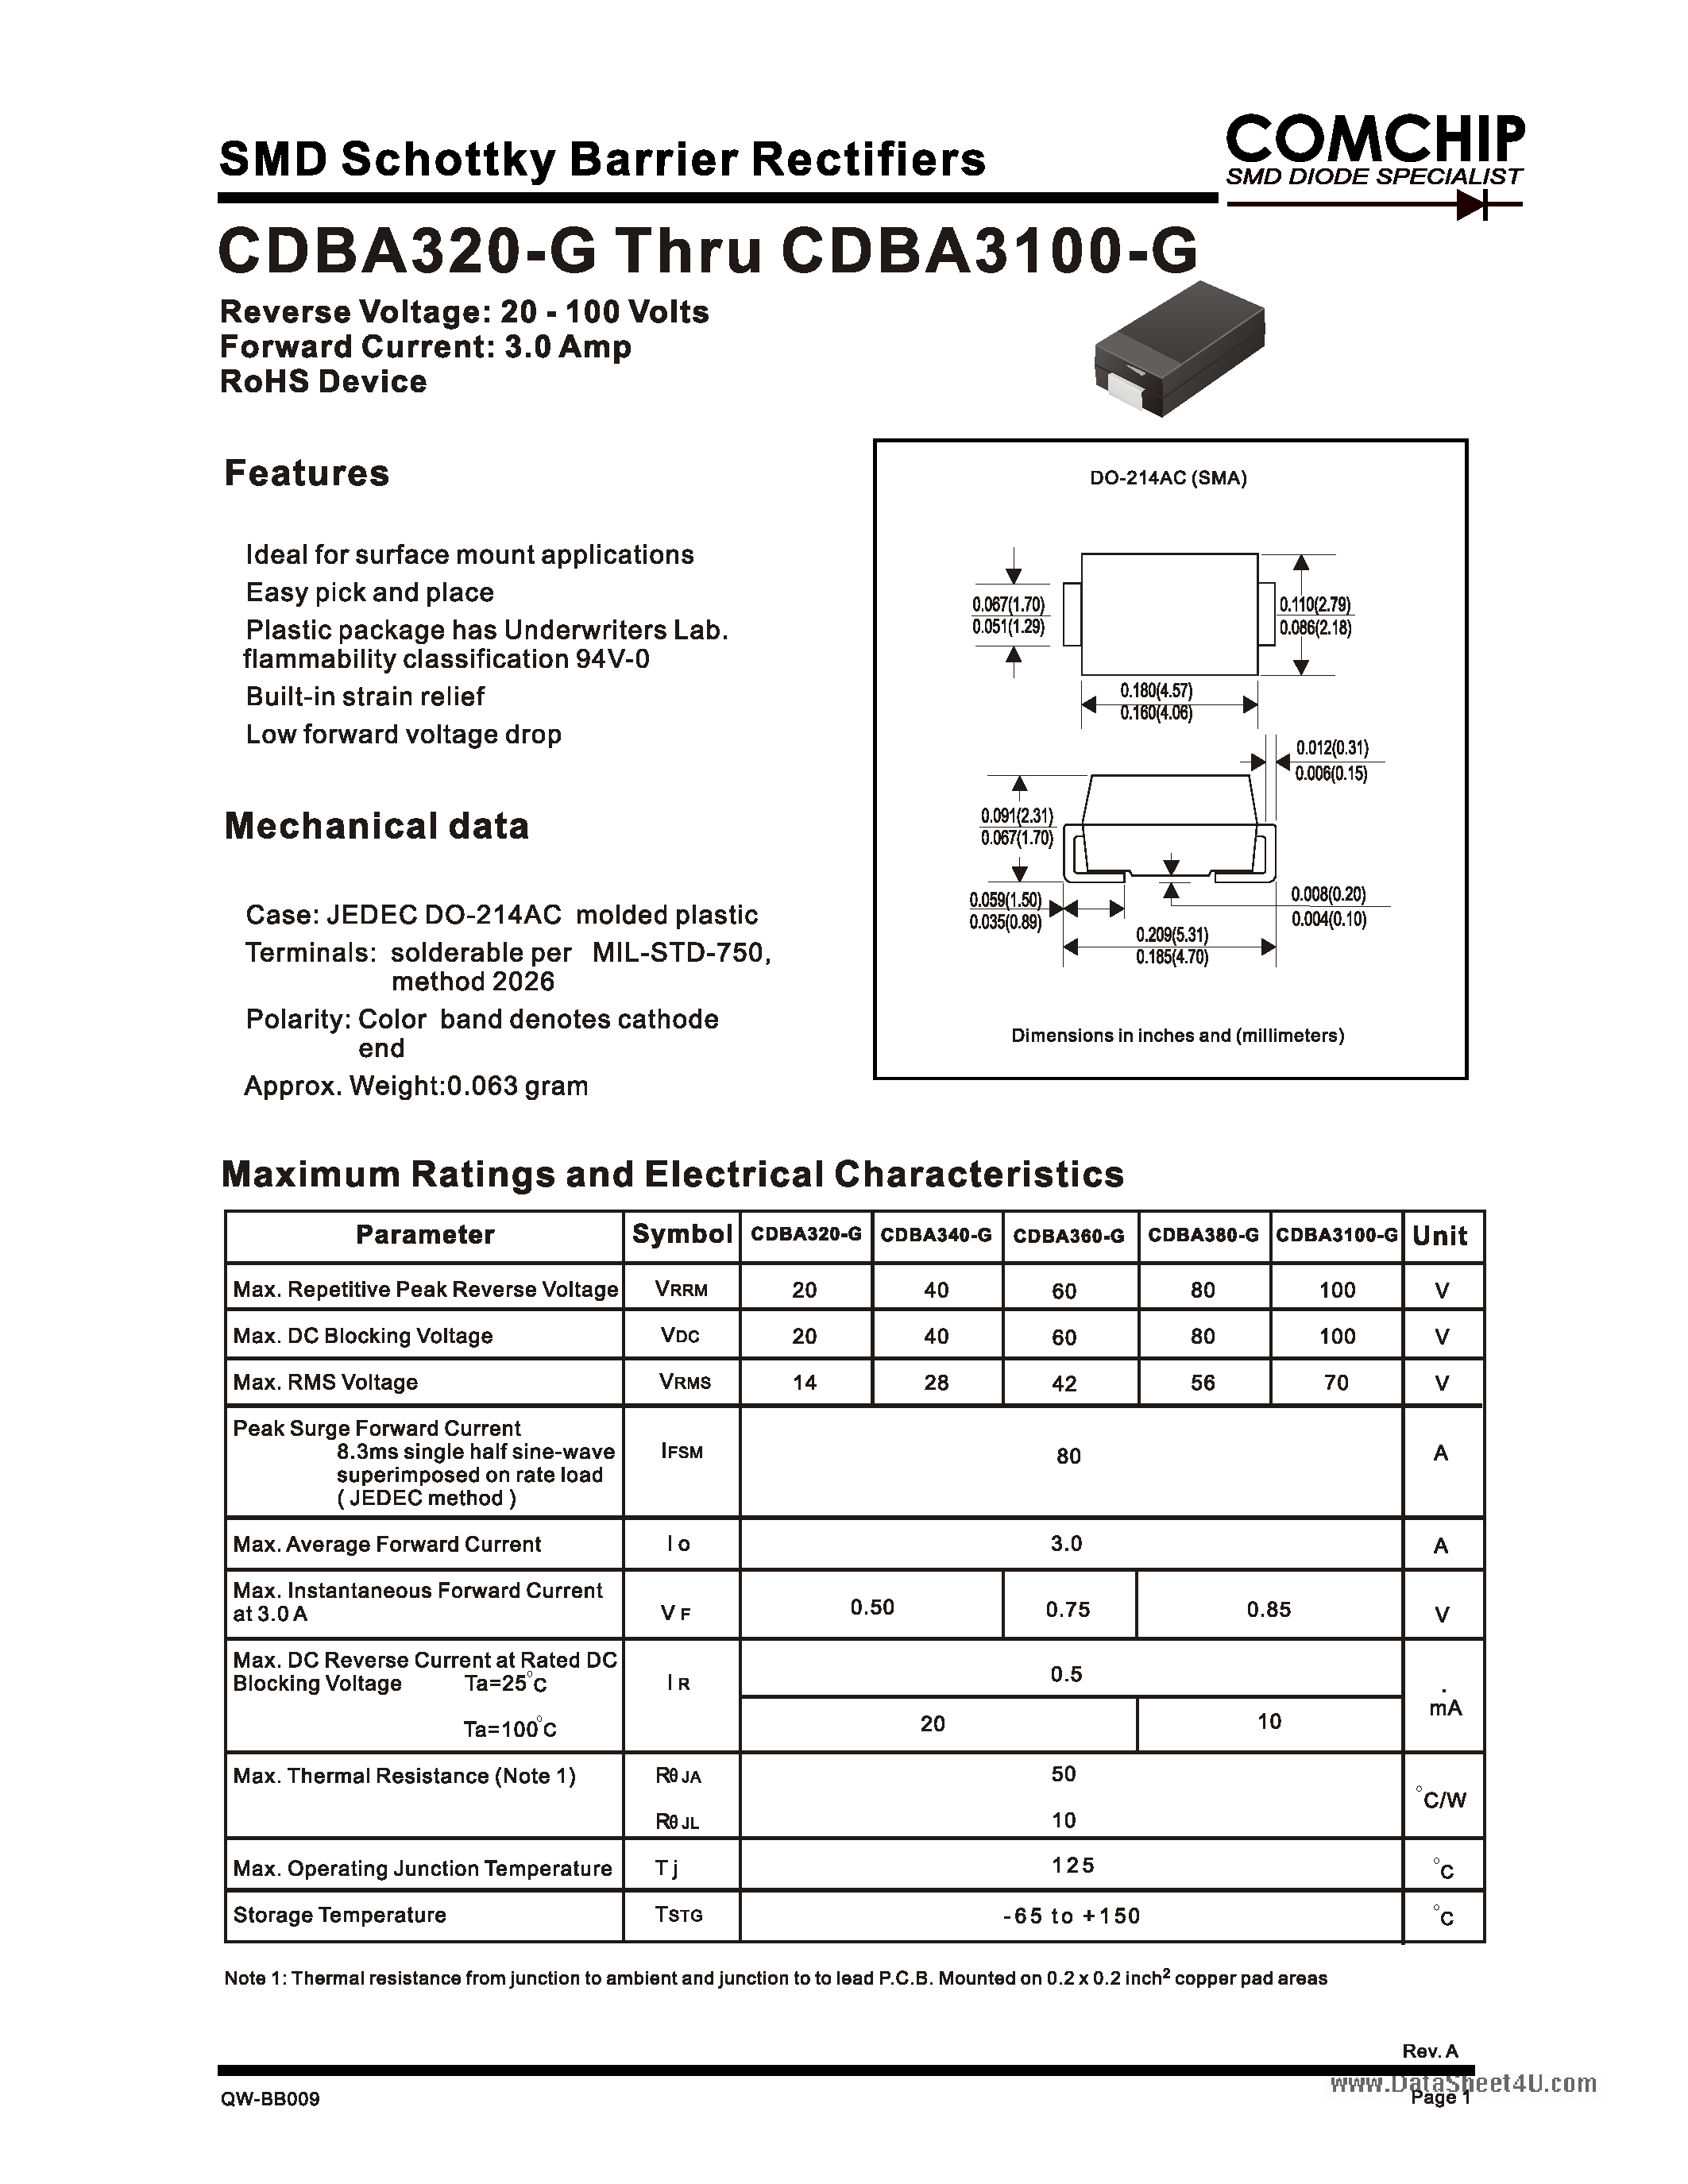 Даташит CDBA3100-G - (CDBA320-G - CDBA3100-G) SMD sChottky Barrier Rectifiers страница 1